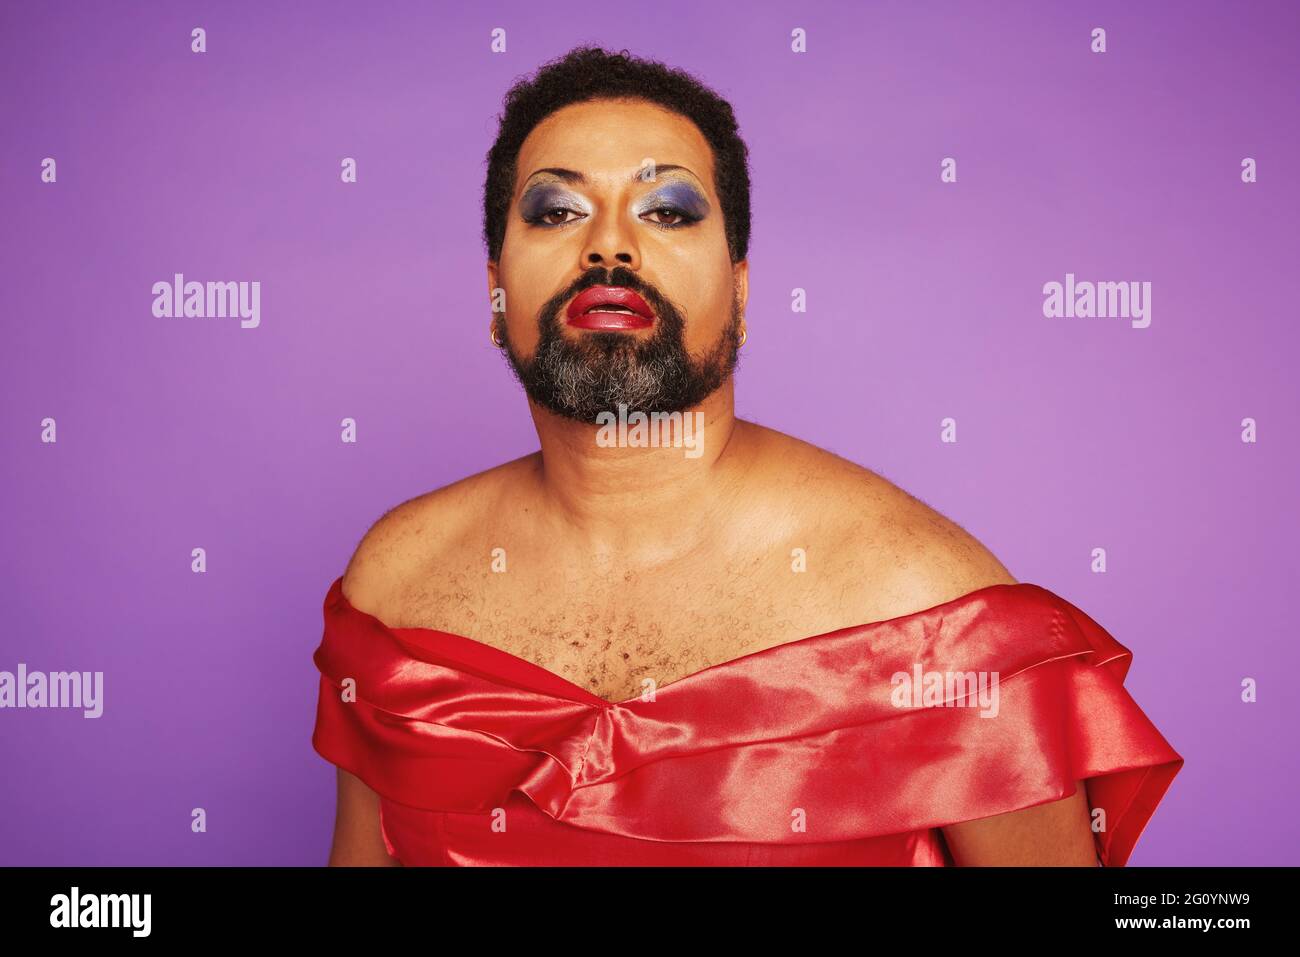 Portrait d'un homme avec une barbe portant une robe rouge et un maquillage féminin. Élégante reine de drag sur fond violet. Banque D'Images